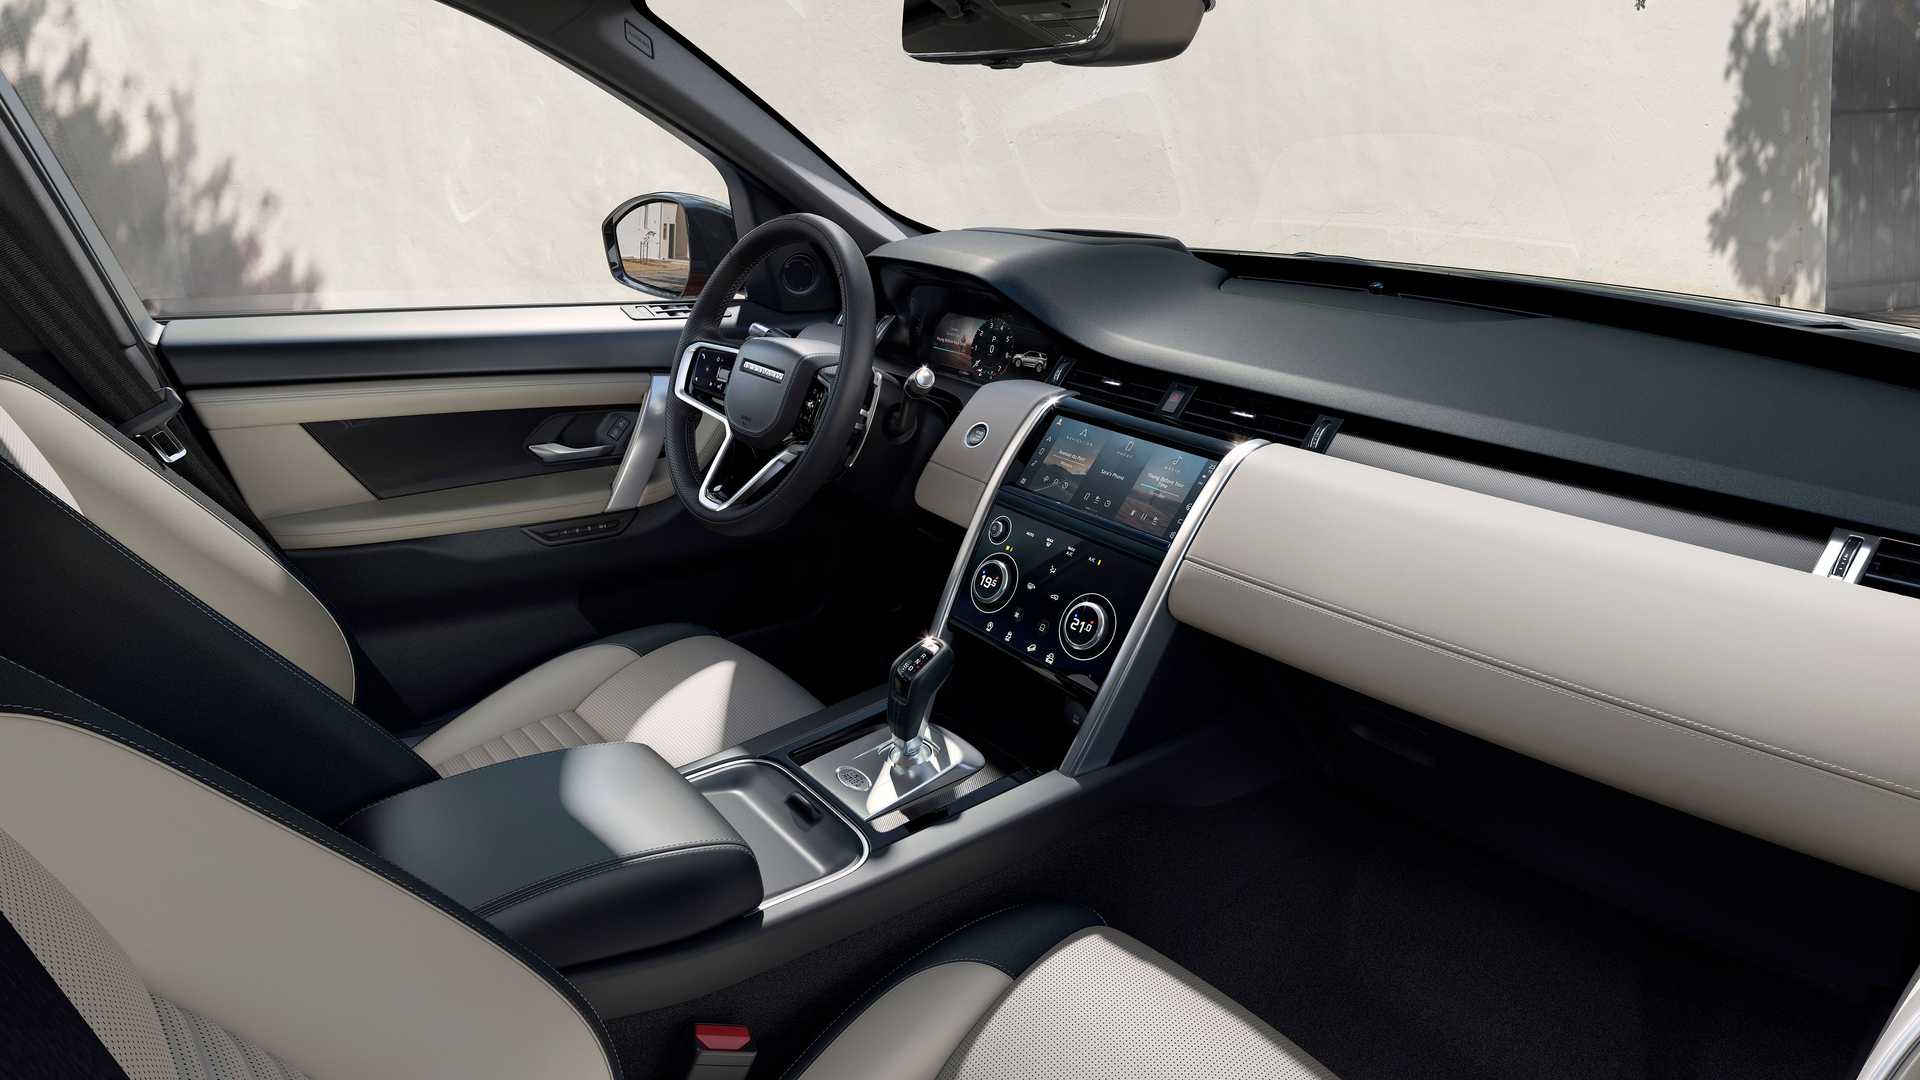 Range Rover đời mới đã nâng cấp nội thất hoàn toàn, tạo ra không gian sang trọng hơn, hiện đại hơn và tiện nghi hơn cho khách hàng. Hãy xem những hình ảnh chi tiết của nội thất để cảm nhận sự thay đổi nổi bật này.